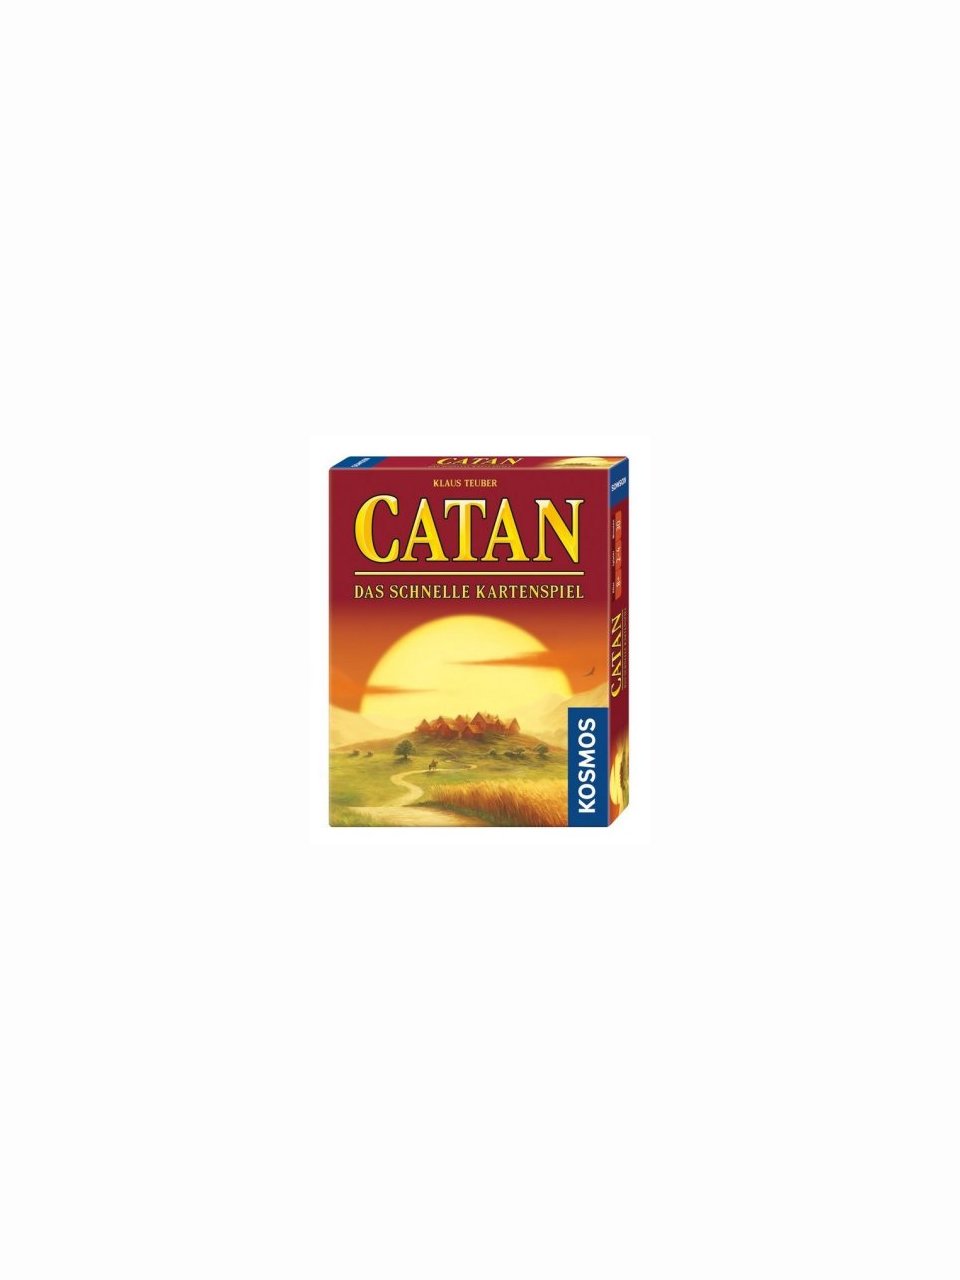 CATAN - Das schnelle Kartenspiel